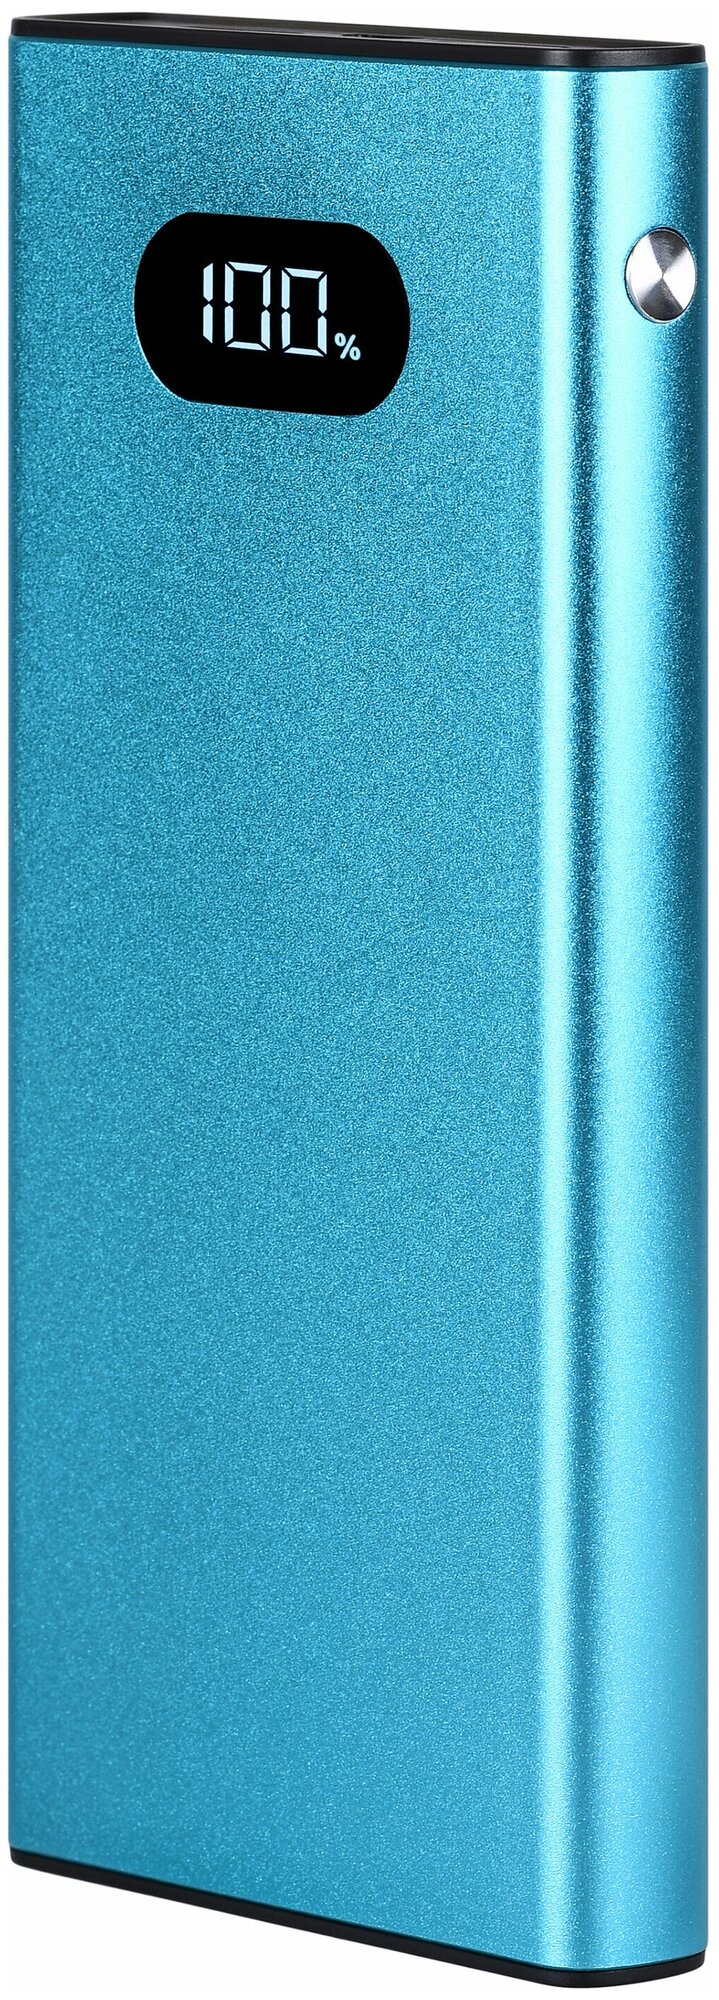 Внешний аккумулятор Tfn Blaze LCD 10000mAh, PD, 22.5W, синий